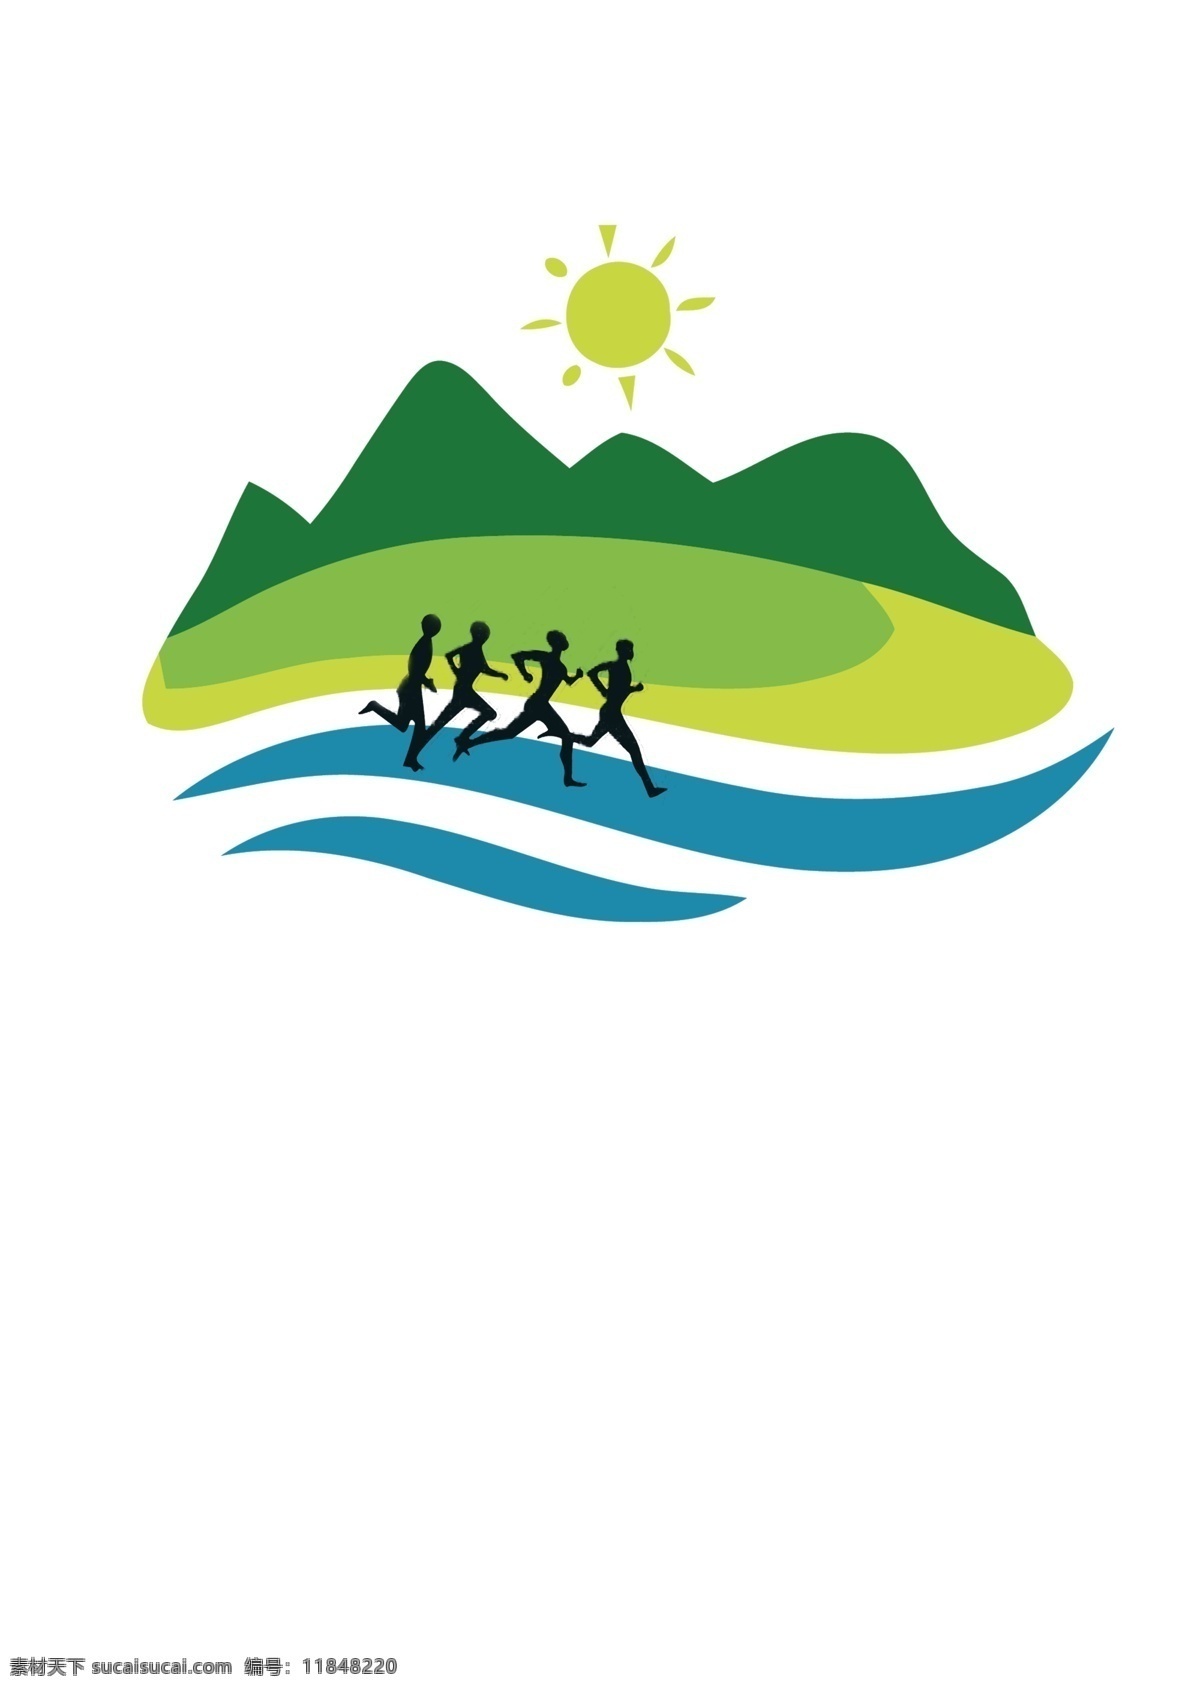 春季 运动会 logo 倡导绿色 春季运动 跑步 每天生活 山林 绿野 刚开始的图片 标志图标 企业 标志